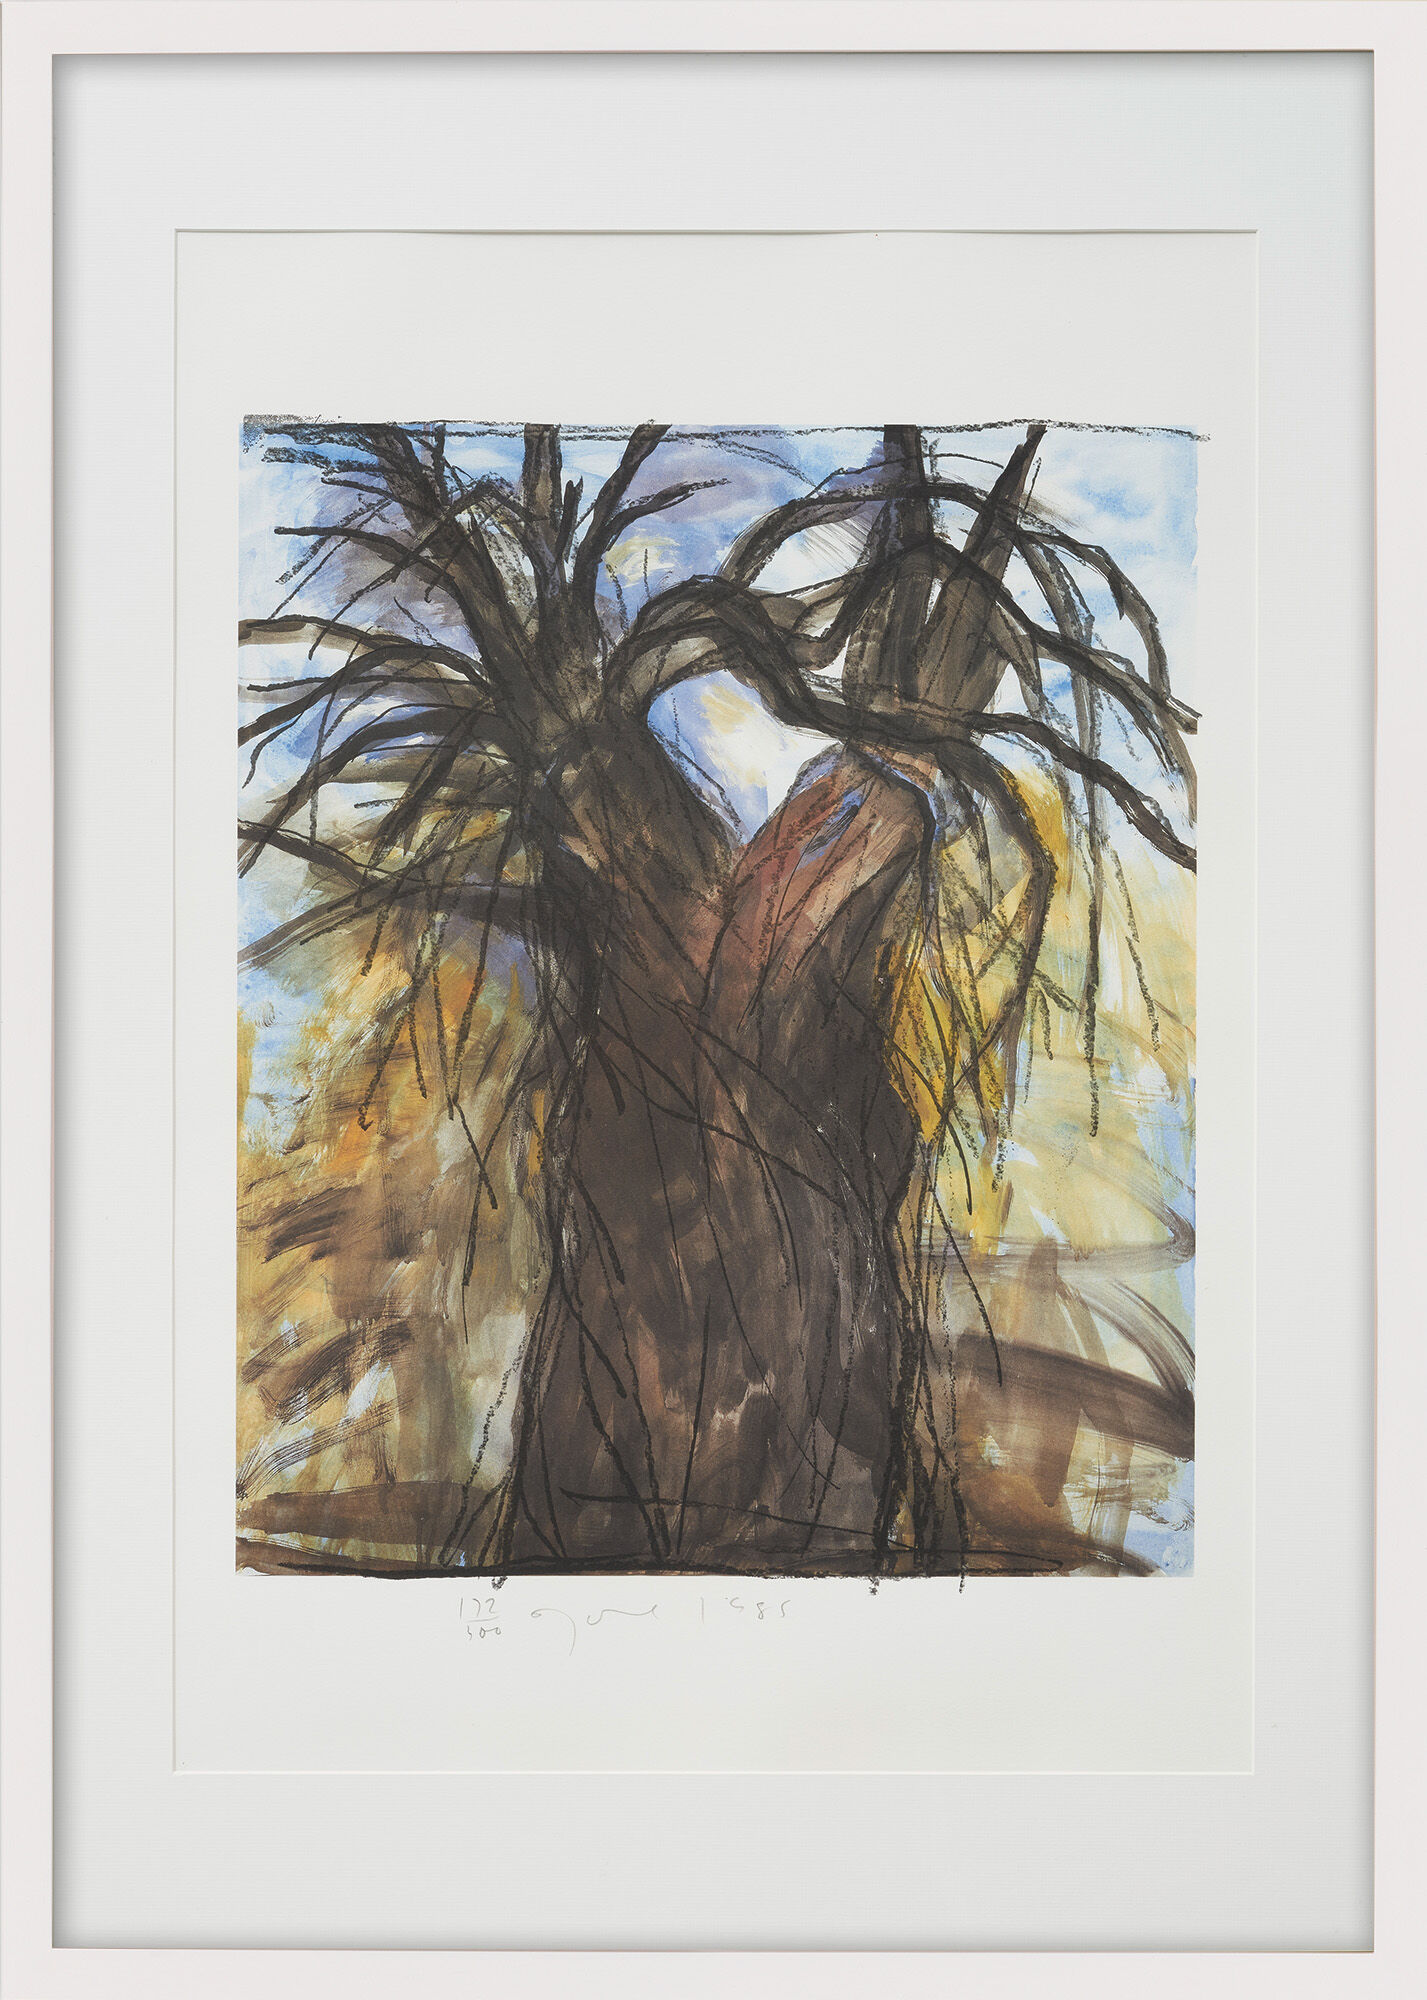 Tableau "L'arbre du Nouvel An" (1985) von Jim Dine